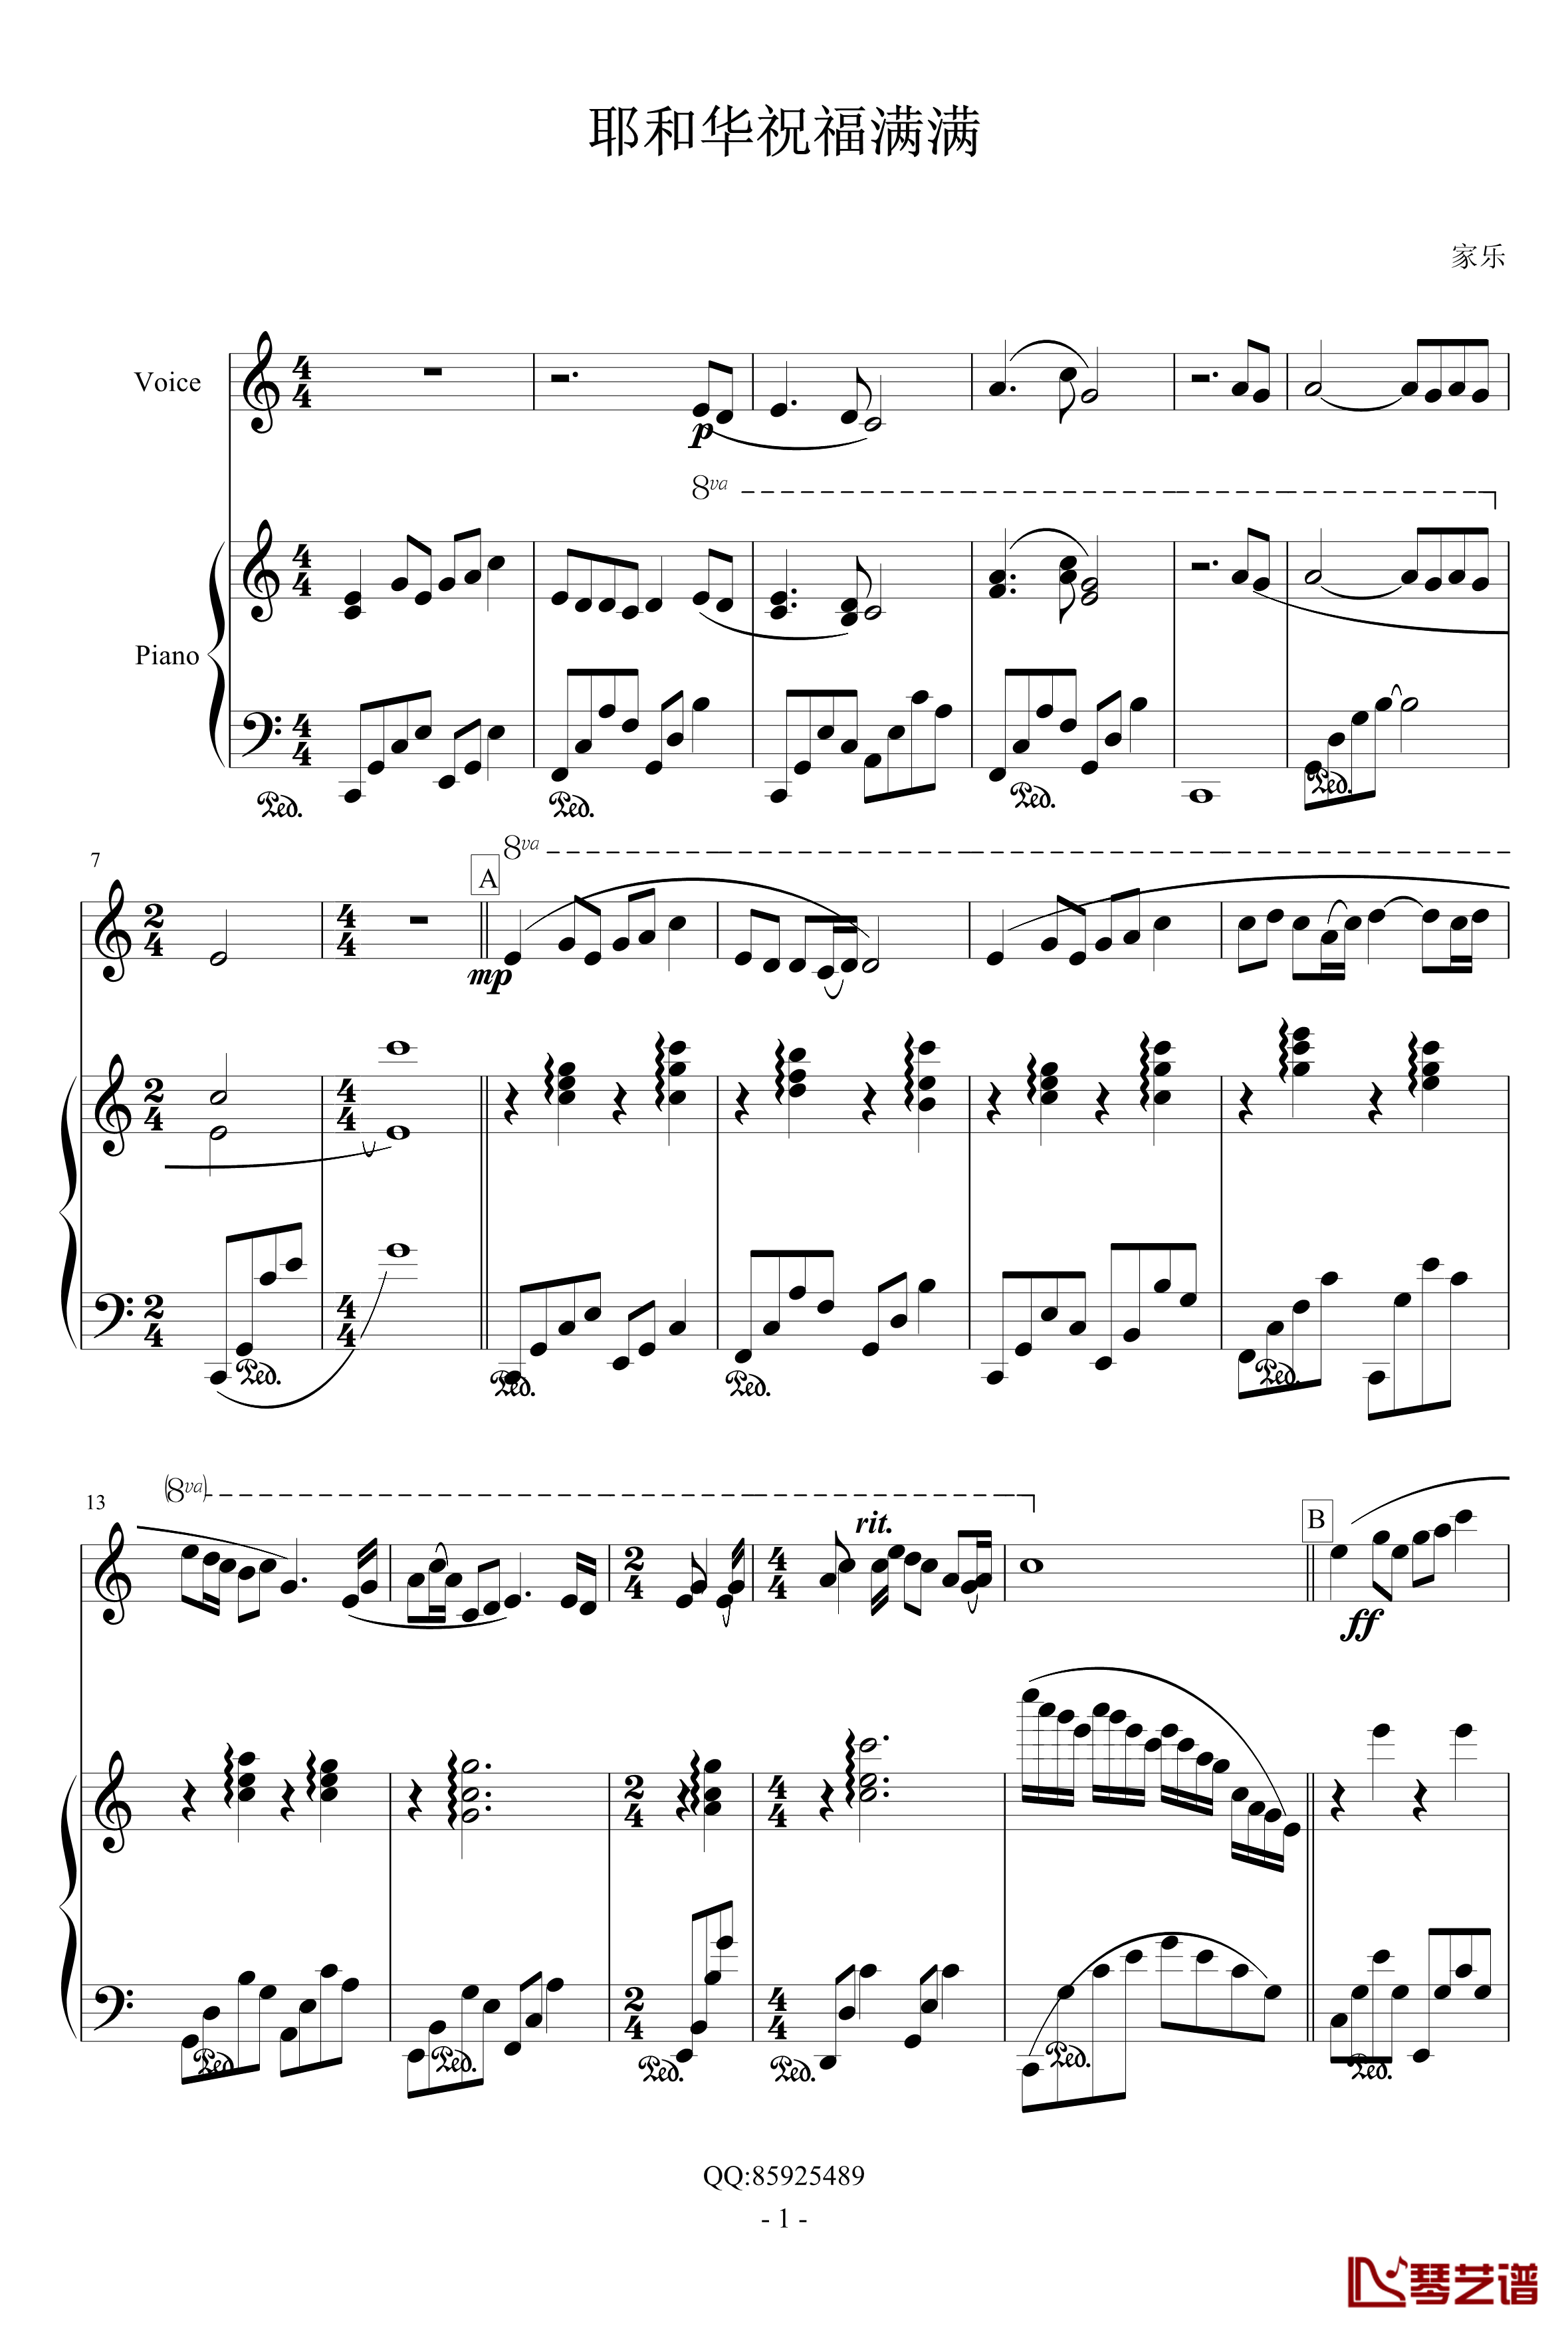 耶和华祝福满满钢琴谱-chencile1